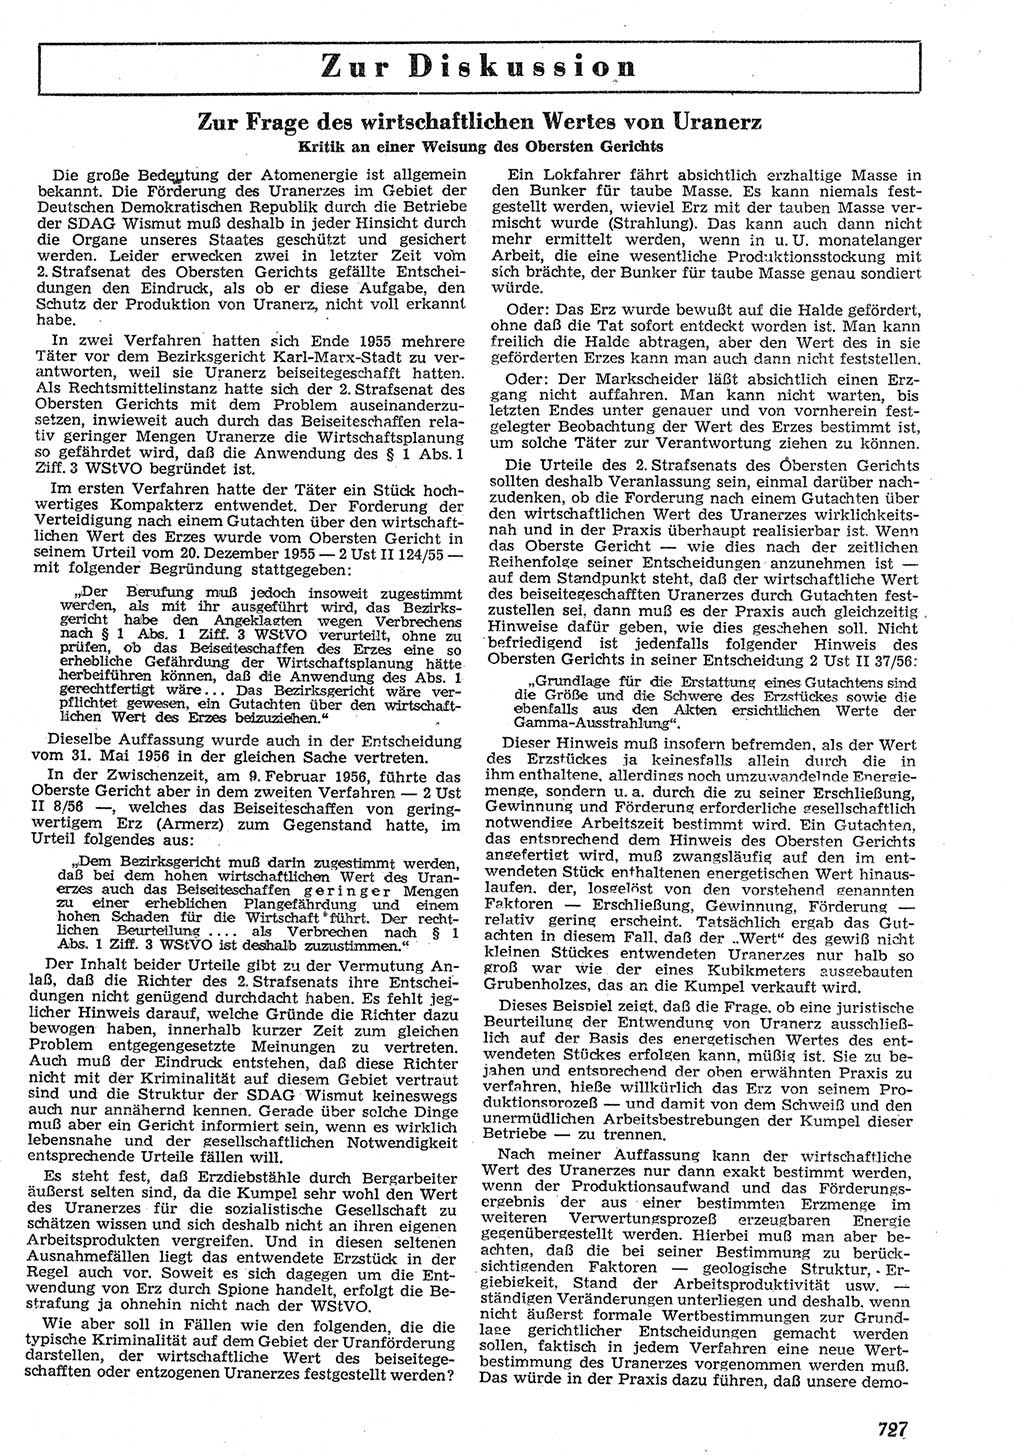 Neue Justiz (NJ), Zeitschrift für Recht und Rechtswissenschaft [Deutsche Demokratische Republik (DDR)], 10. Jahrgang 1956, Seite 727 (NJ DDR 1956, S. 727)